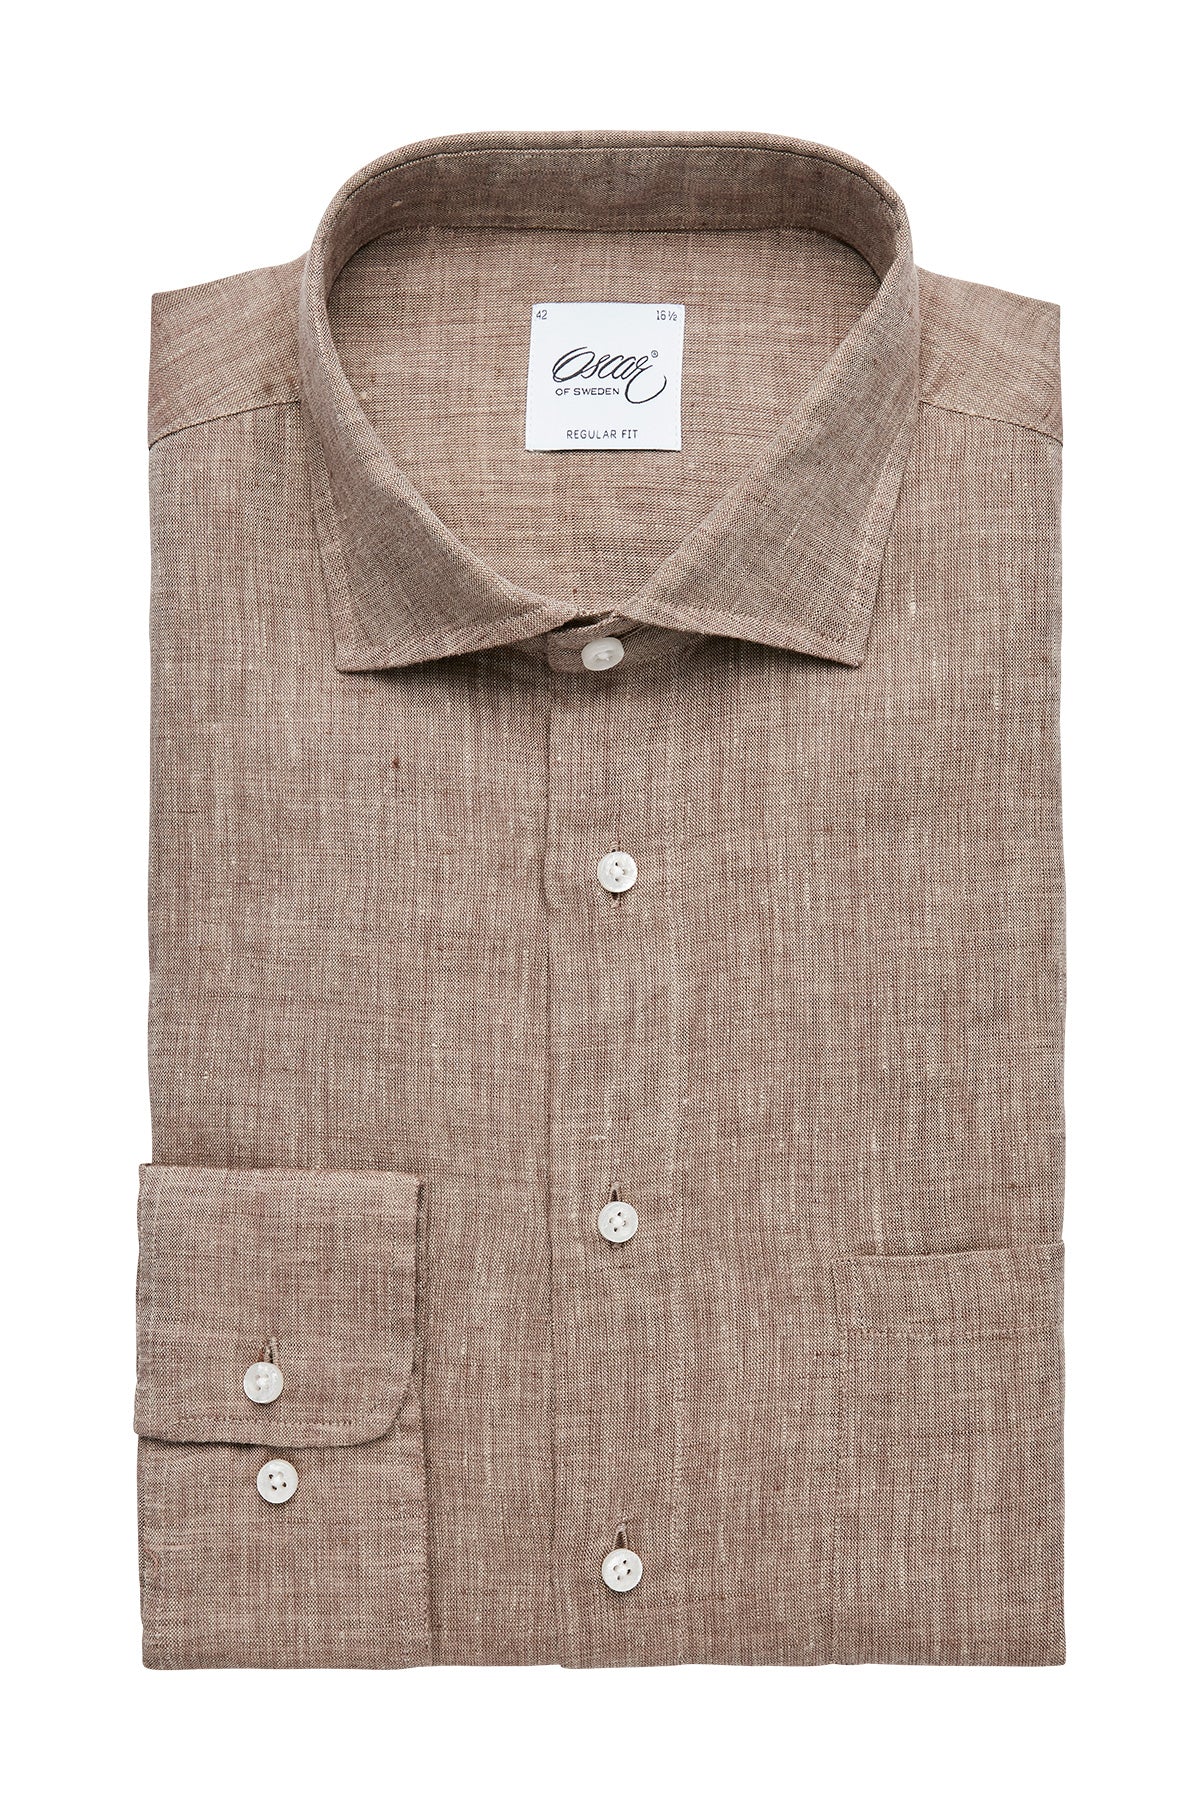 Brown regular fit linen shirt